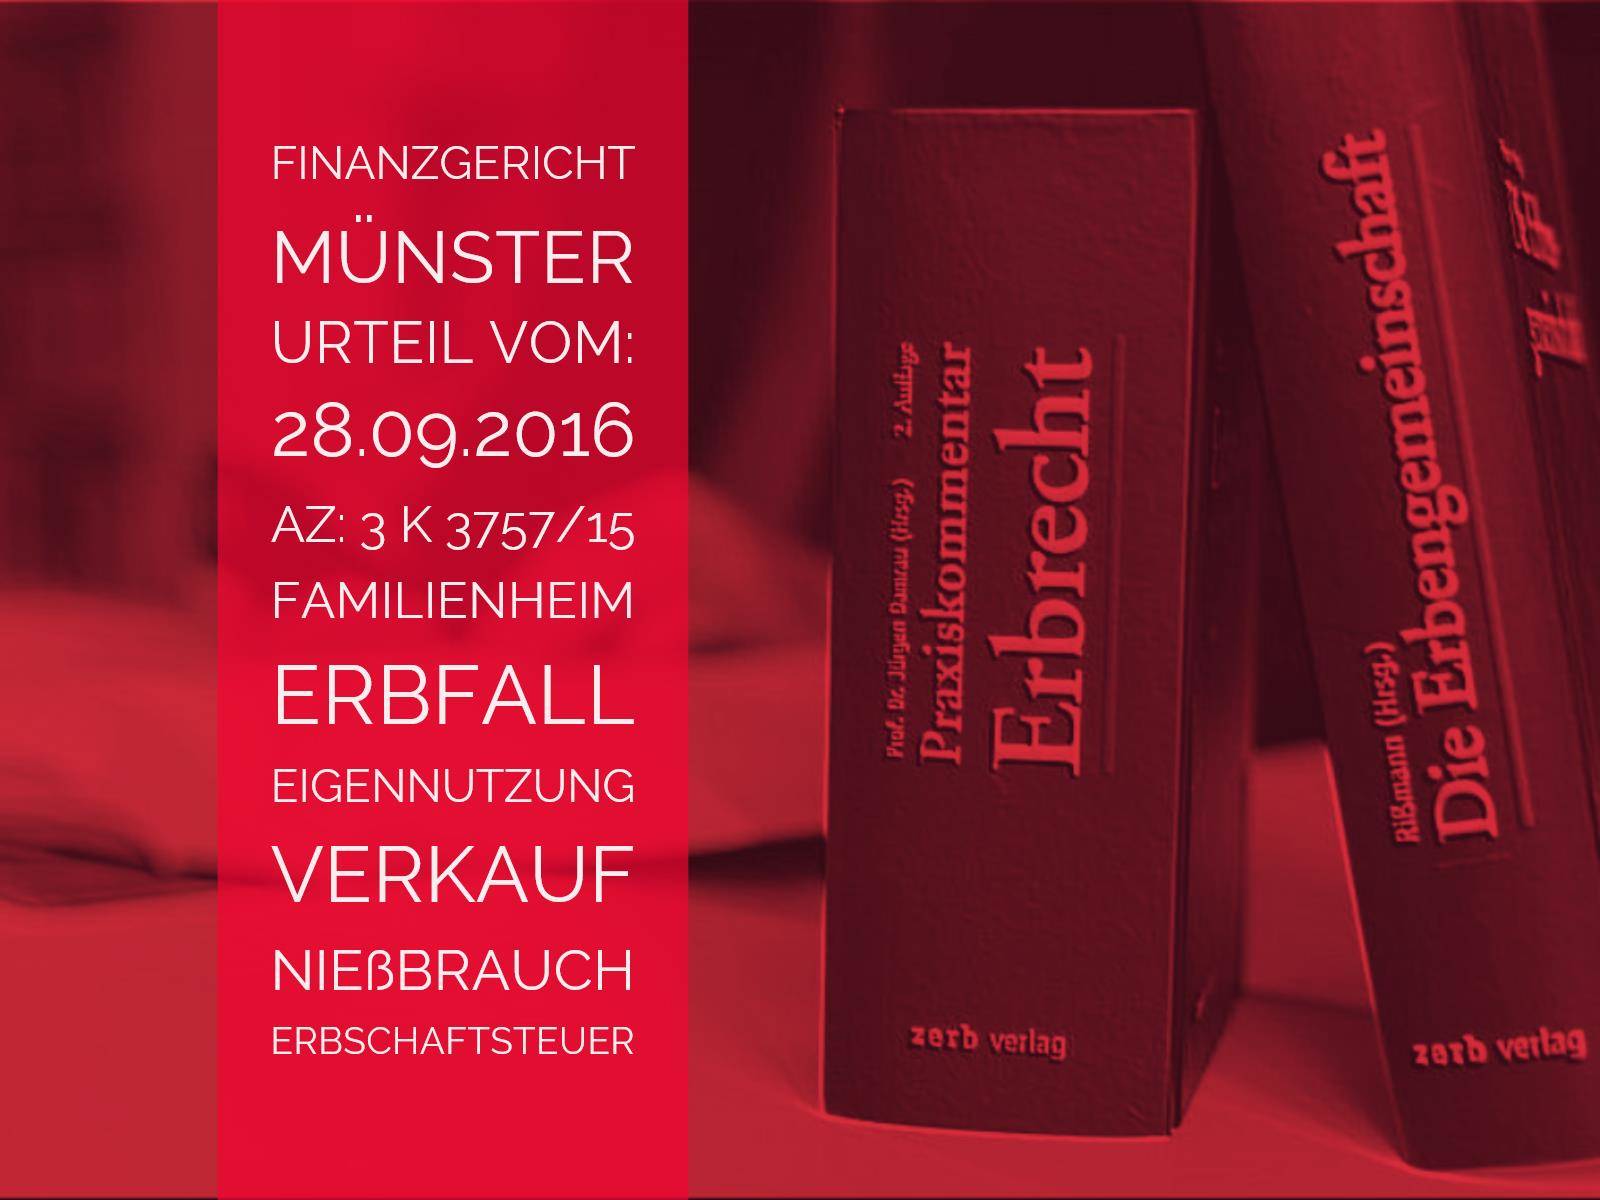 Erbrecht: FG Münster - 28.09.2016 - 3 K 3757/15 | Erbschaftsteuerpflicht nach Weitergabe des Familienheims unter dem Vorbehalt des Nießbrauches